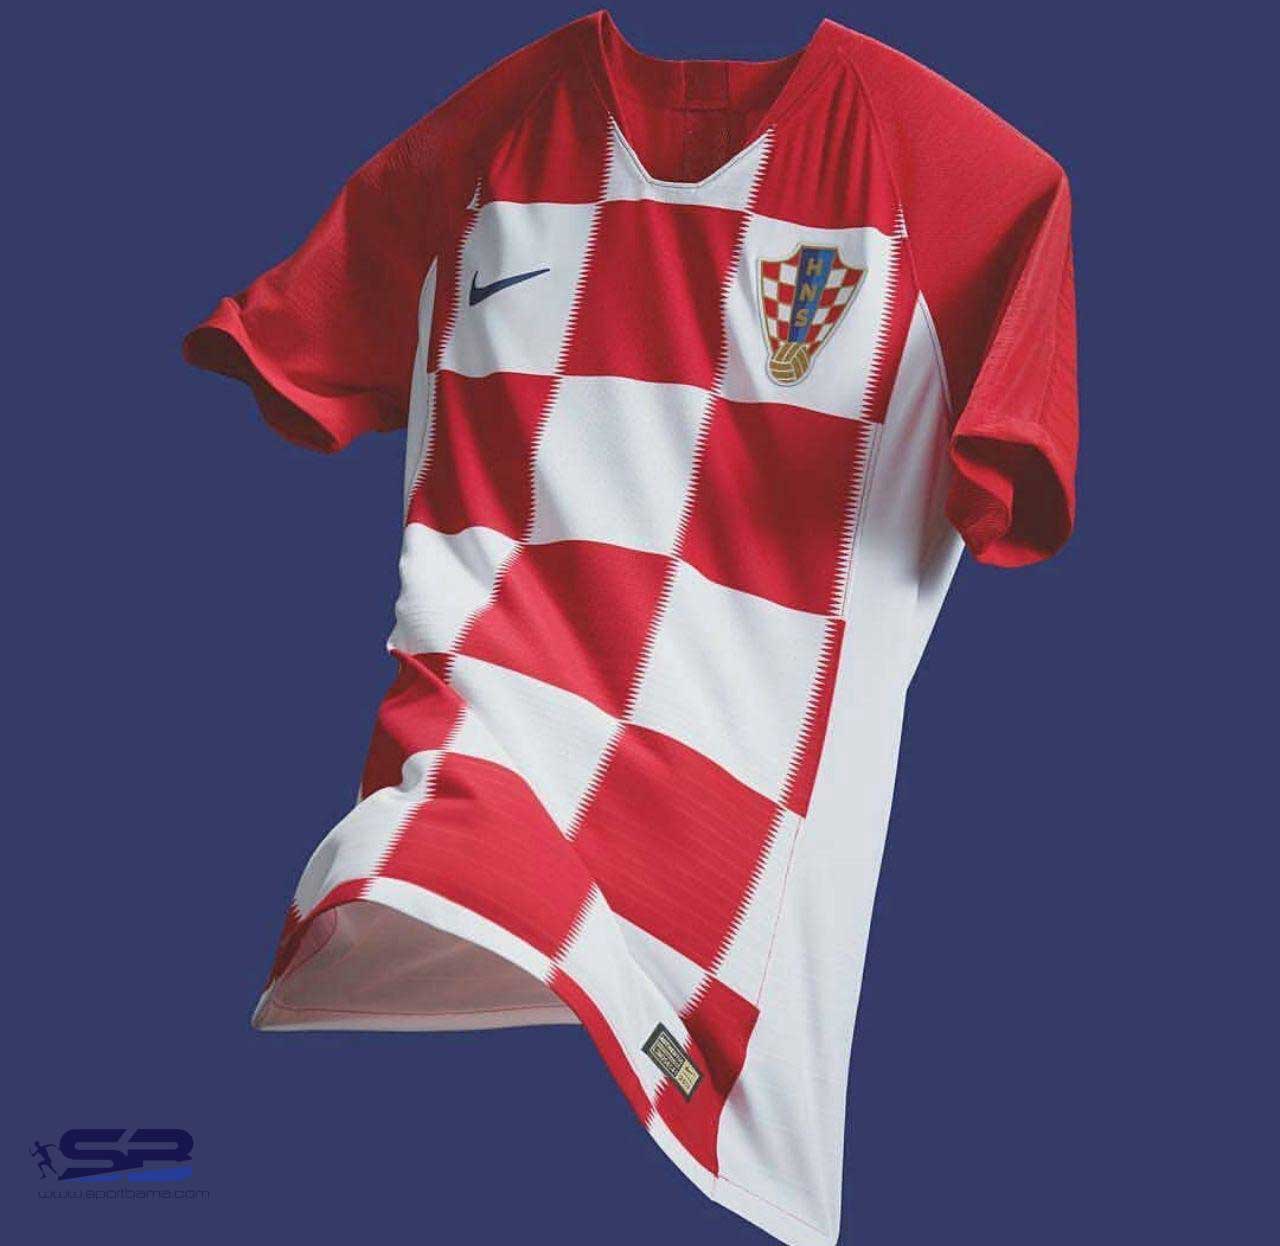  خرید  پیراهن تیم ملی کرواسی برای جام جهانی 2018